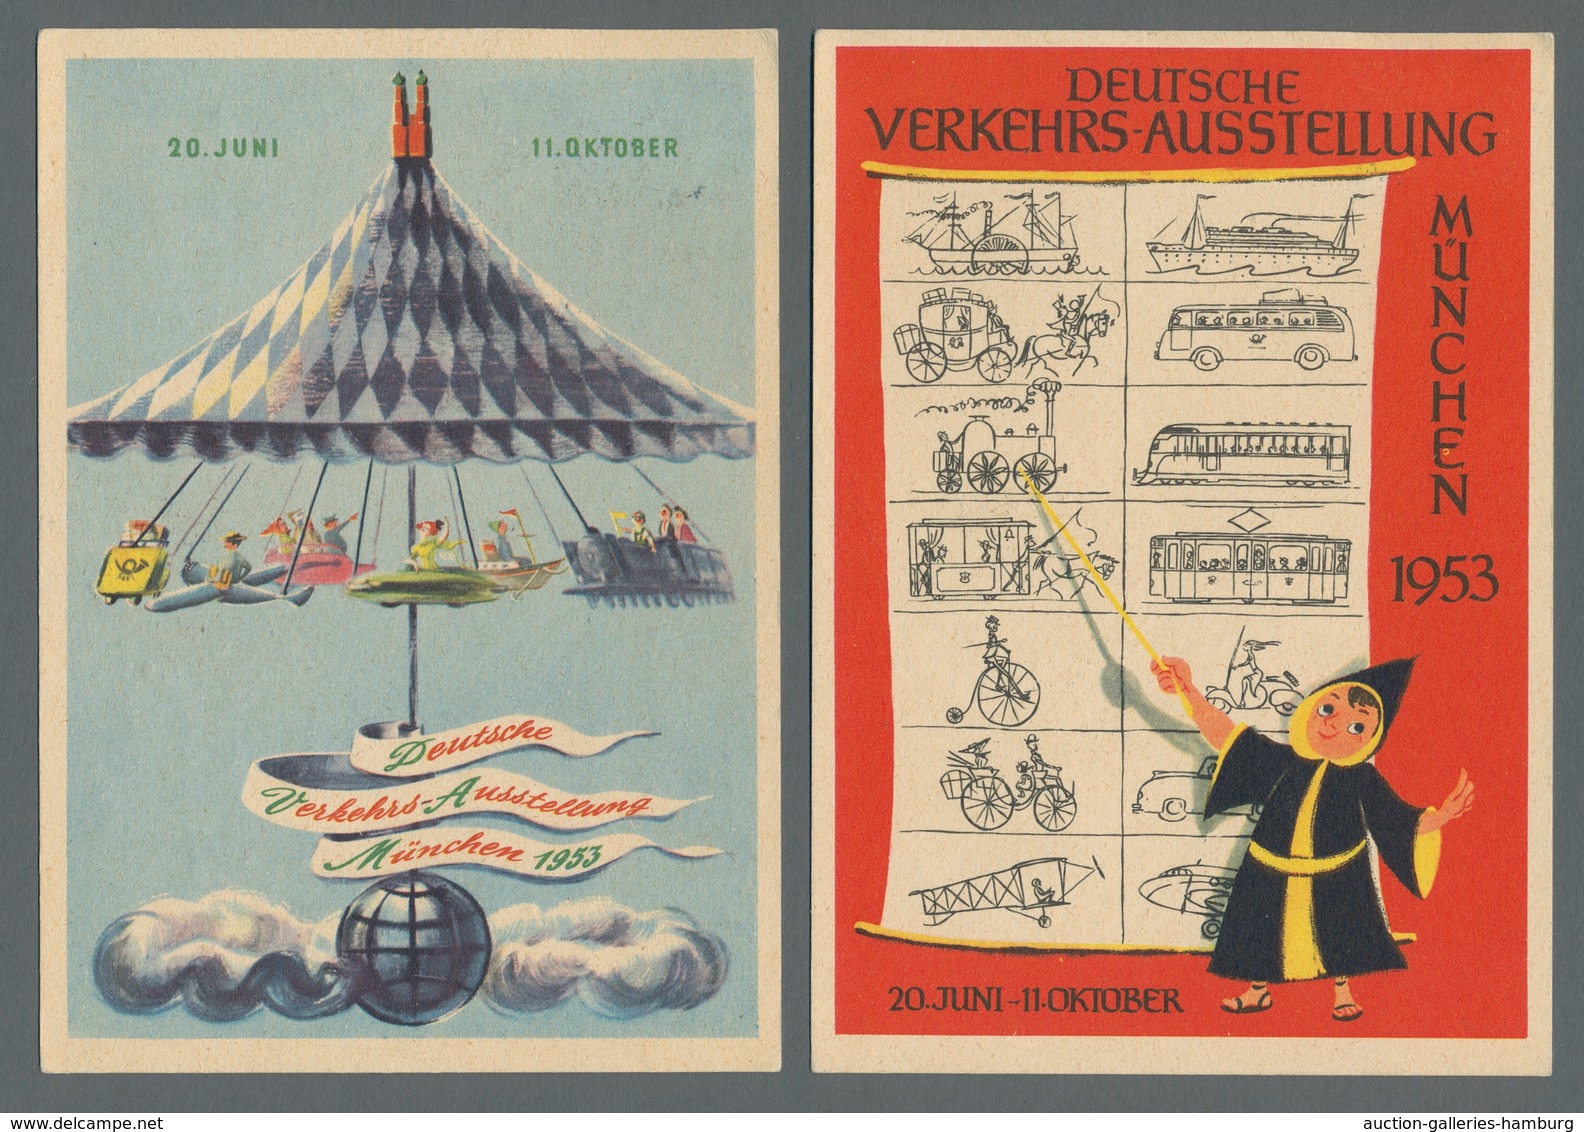 Bundesrepublik - Ganzsachen: 1948, "100 Pfg. Luftpostbrief", dreimal LF 1 II sowie einmal LF 2 II je